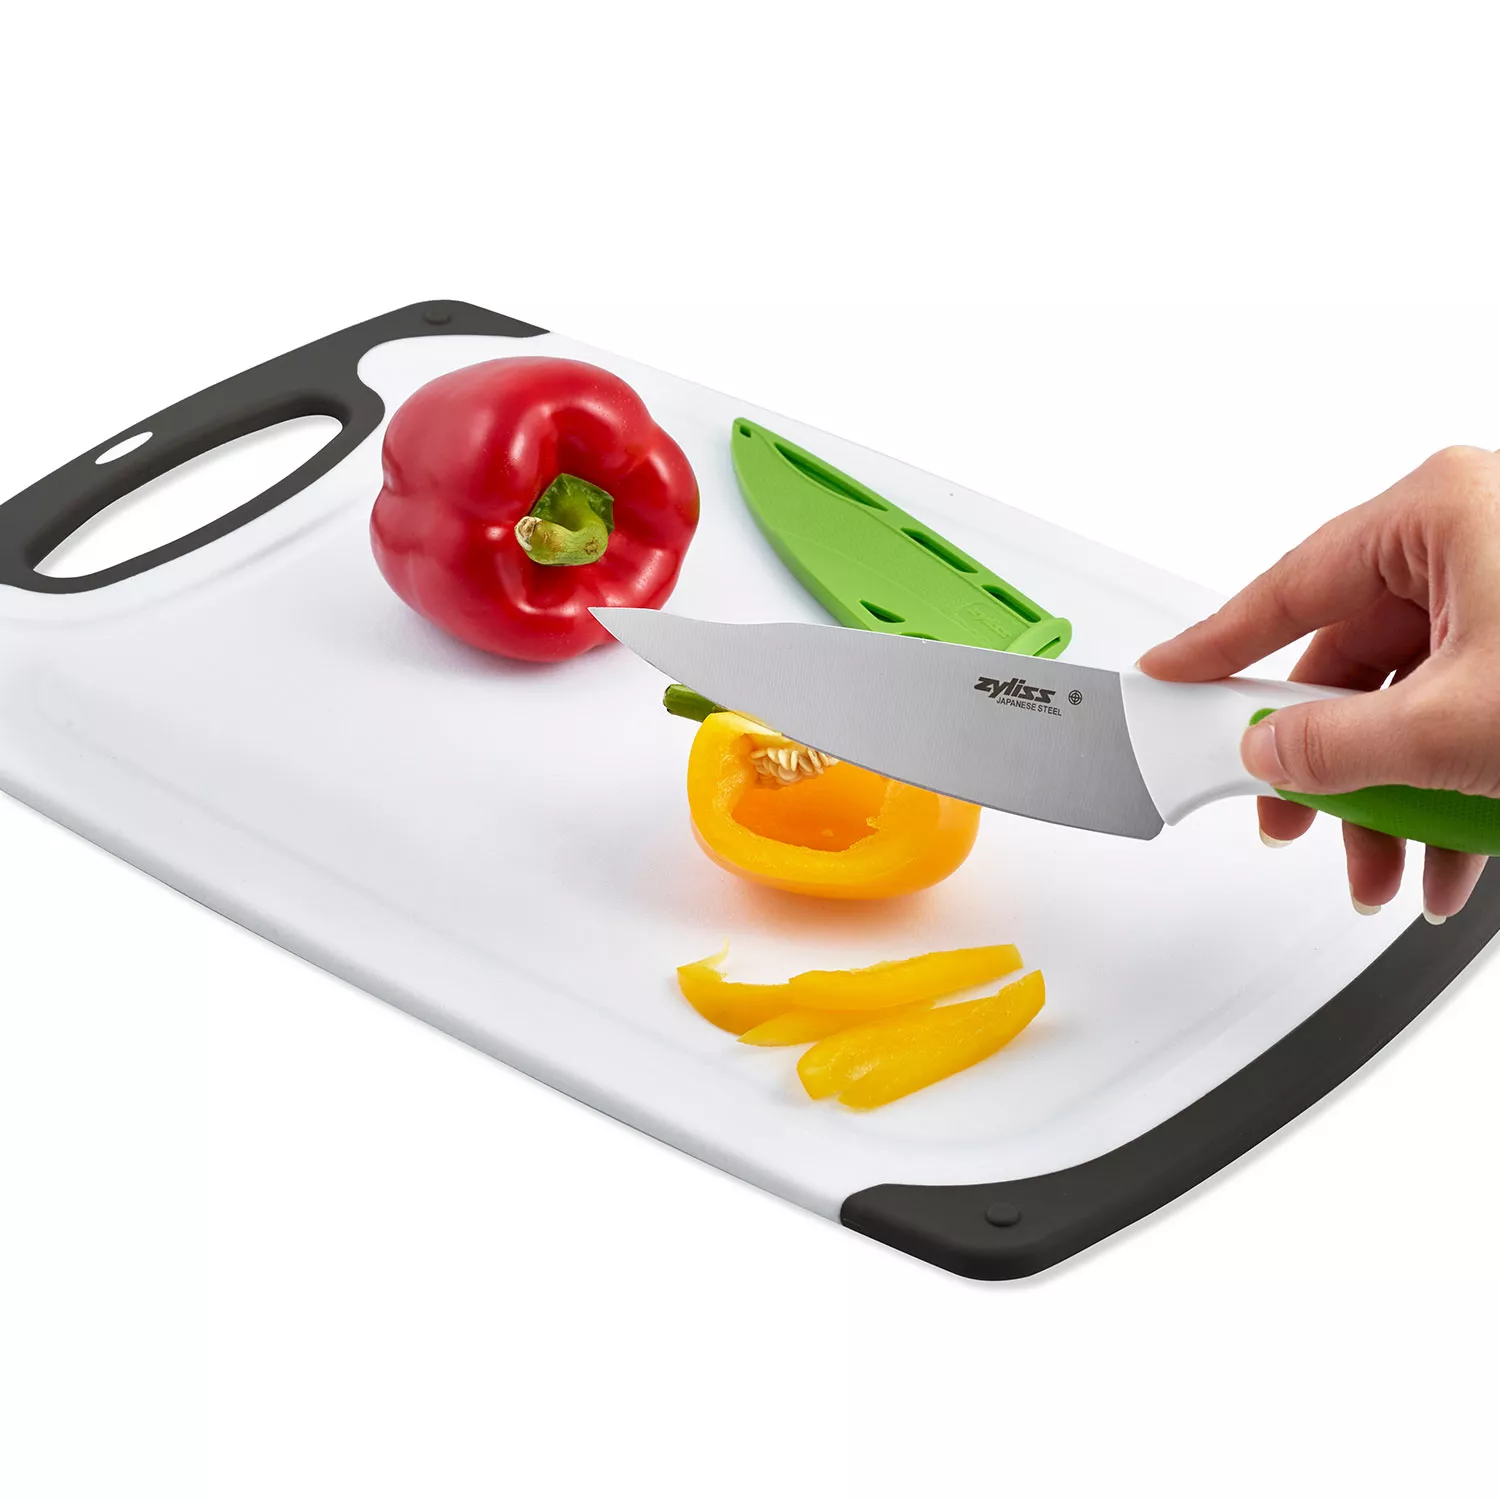 Zyliss Cutting Boards Zyliss Cutlery, Wood Cutting Board, Comfort Cutlery